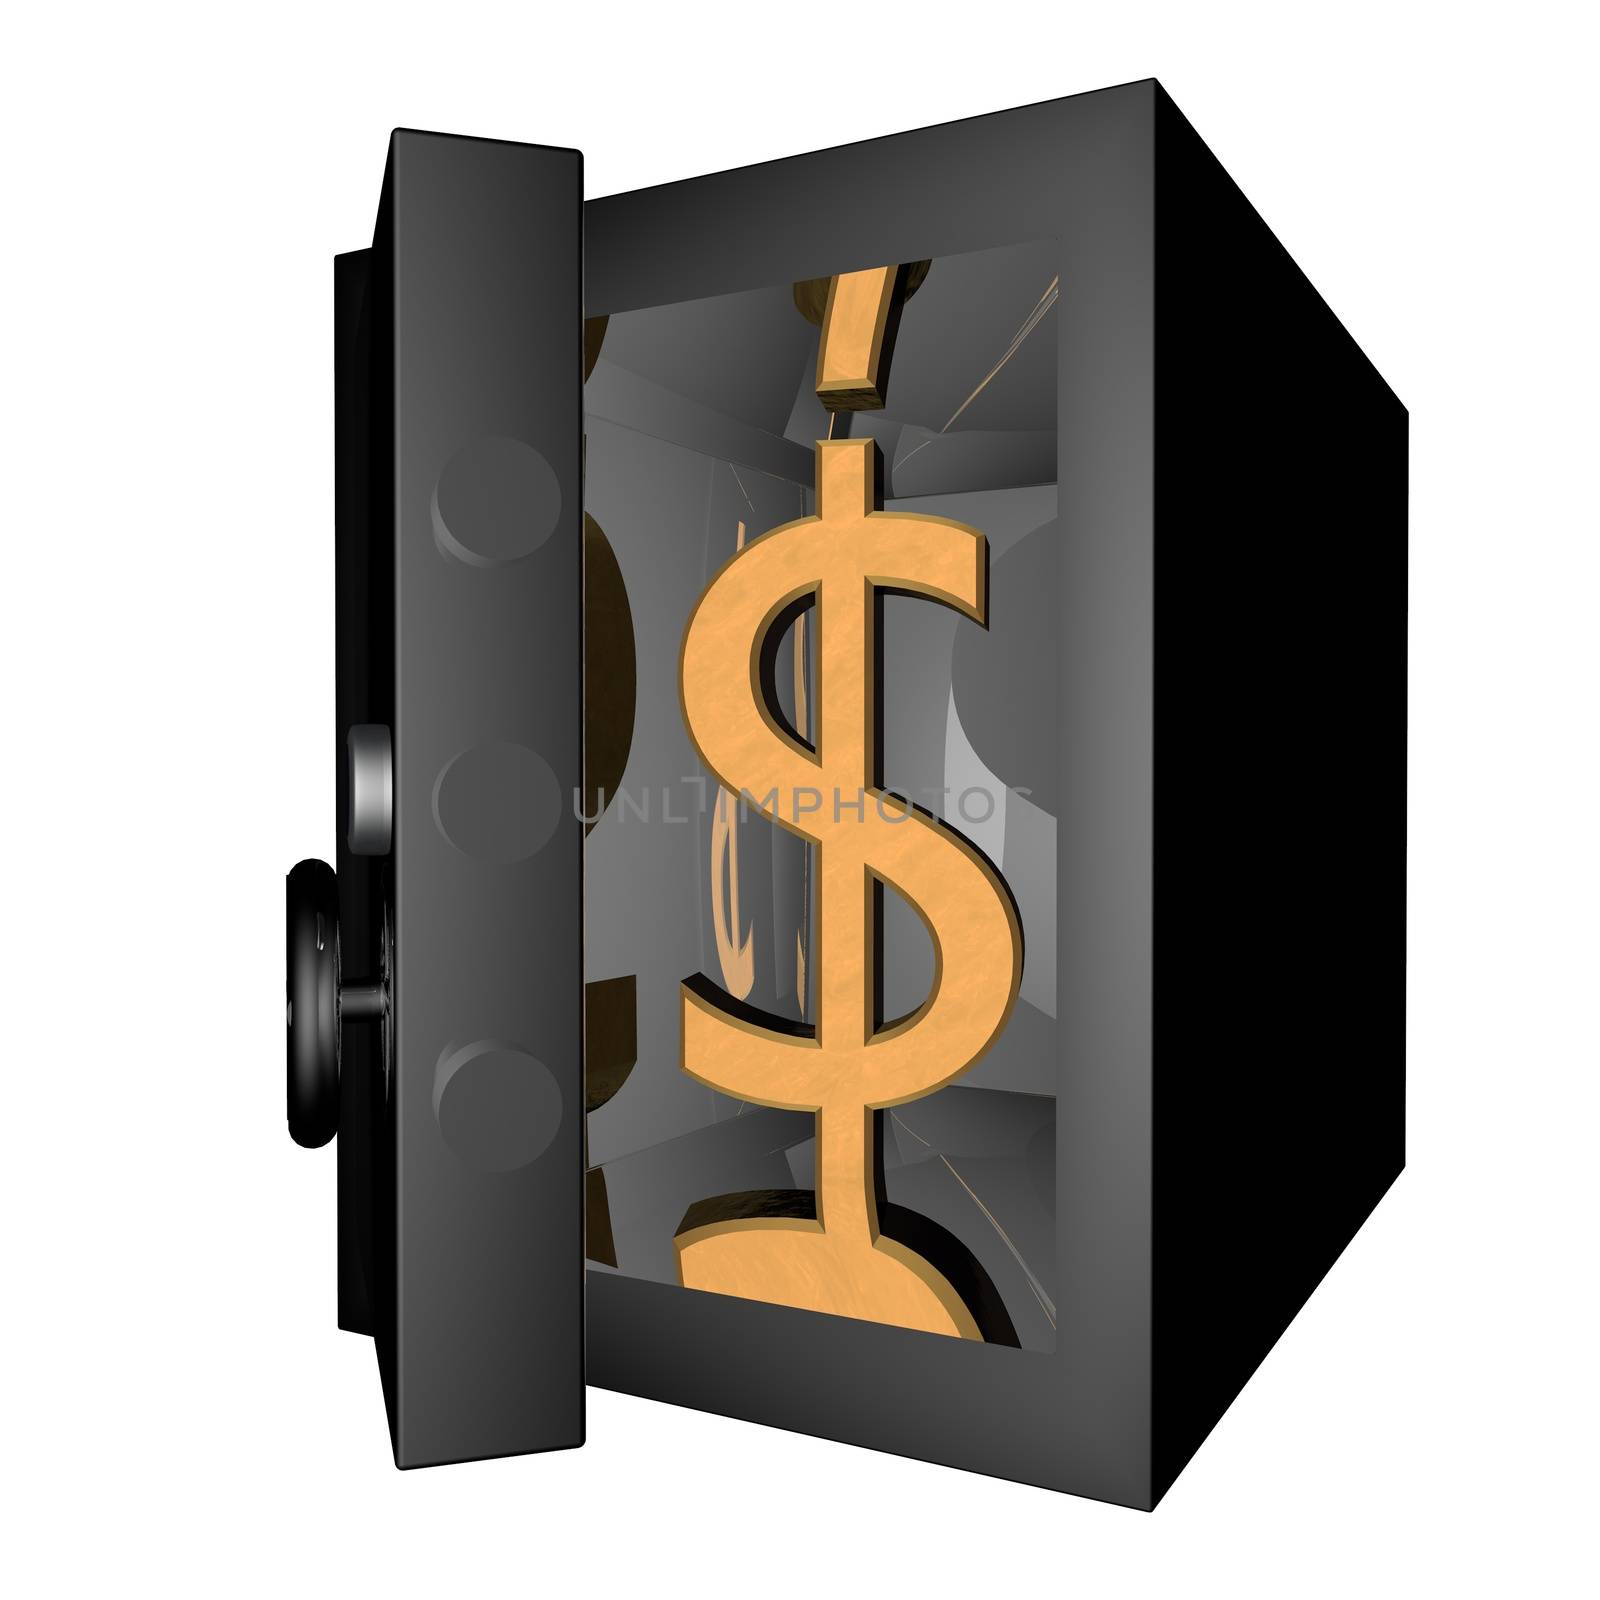 Dollar in vault by Koufax73